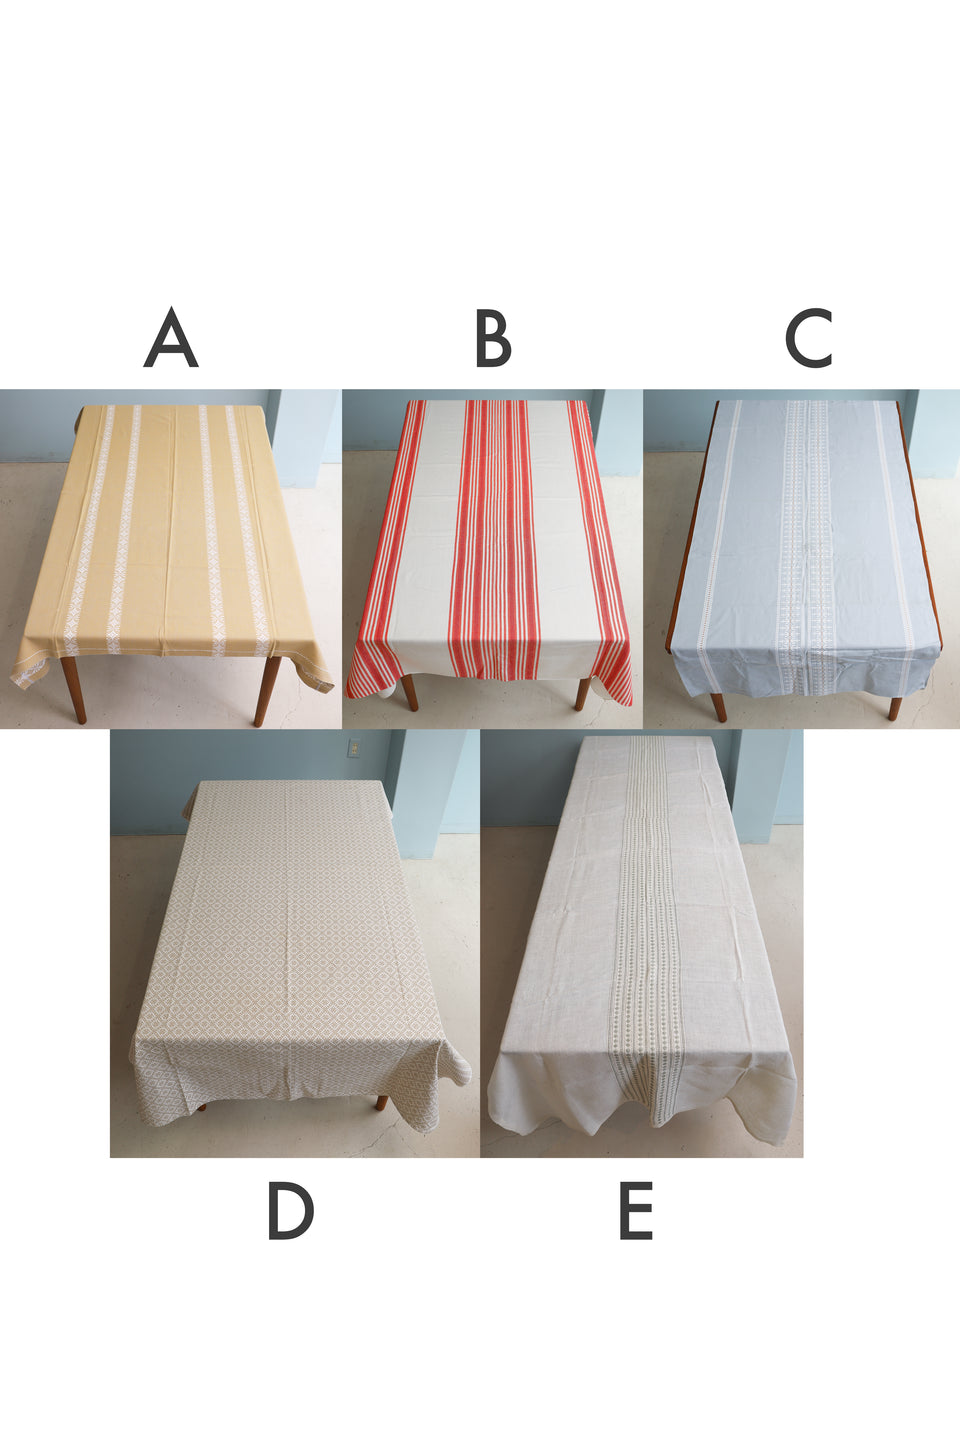 Vintage Fabric Table Cloth Scandinavian Interior/ヴィンテージ ファブリック カーテン テーブルクロス 北欧インテリア